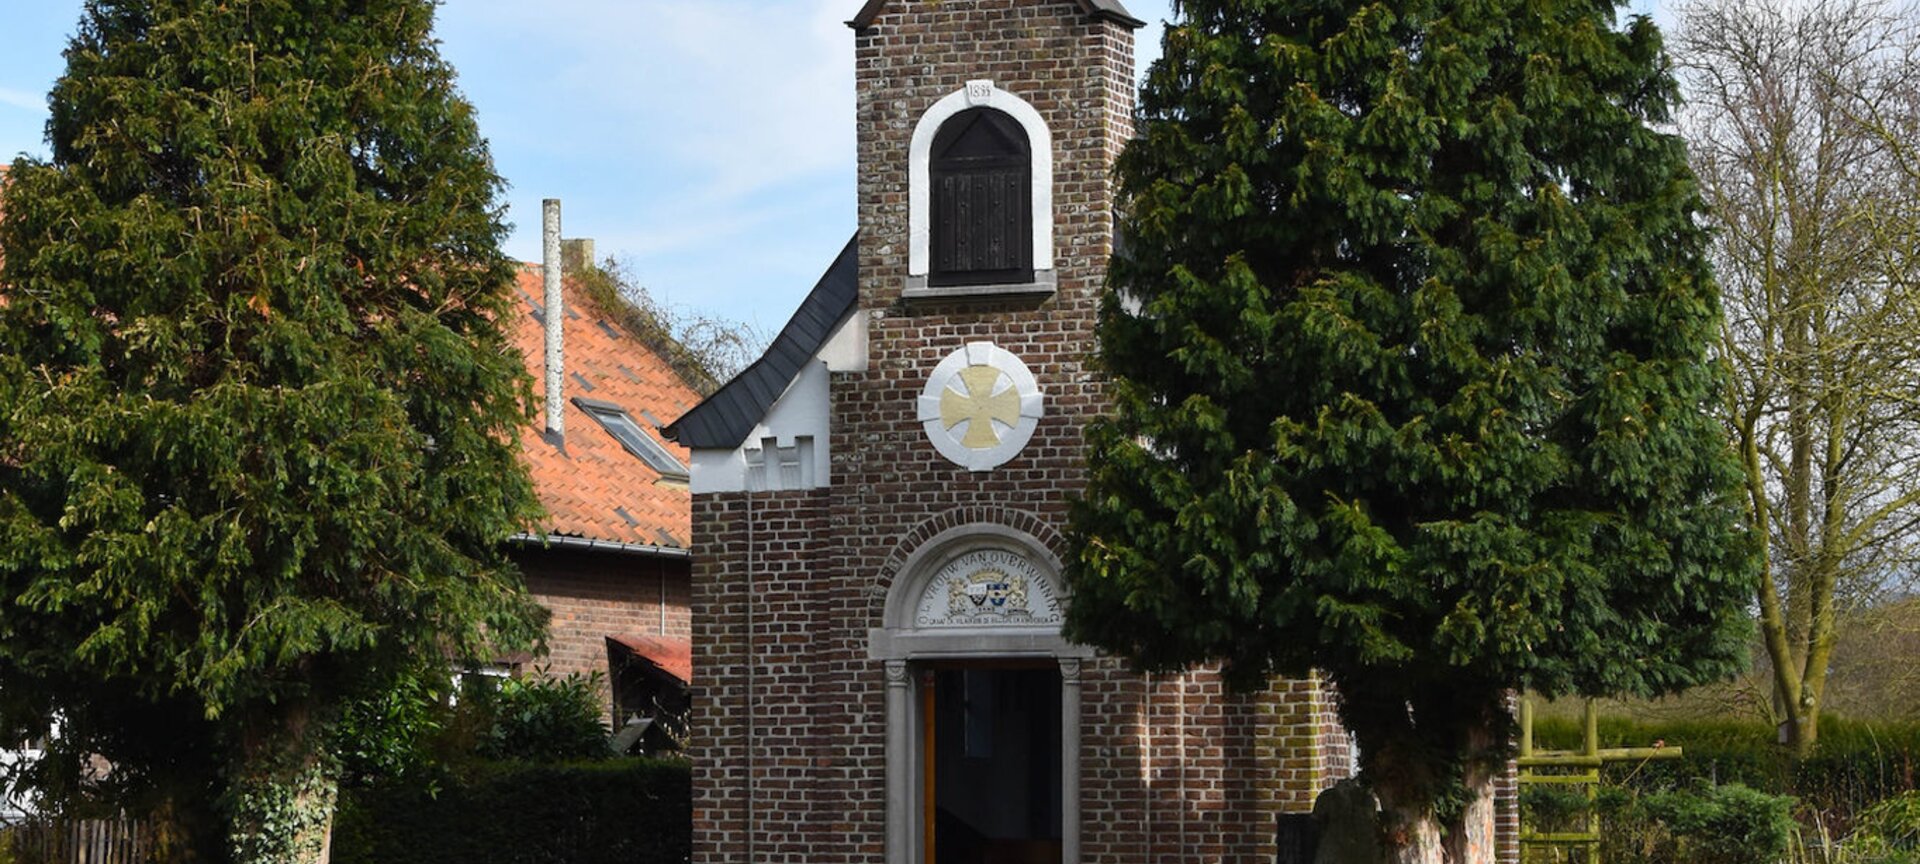 Kapel van Mazenhoven - Kapel van Mazenhoven